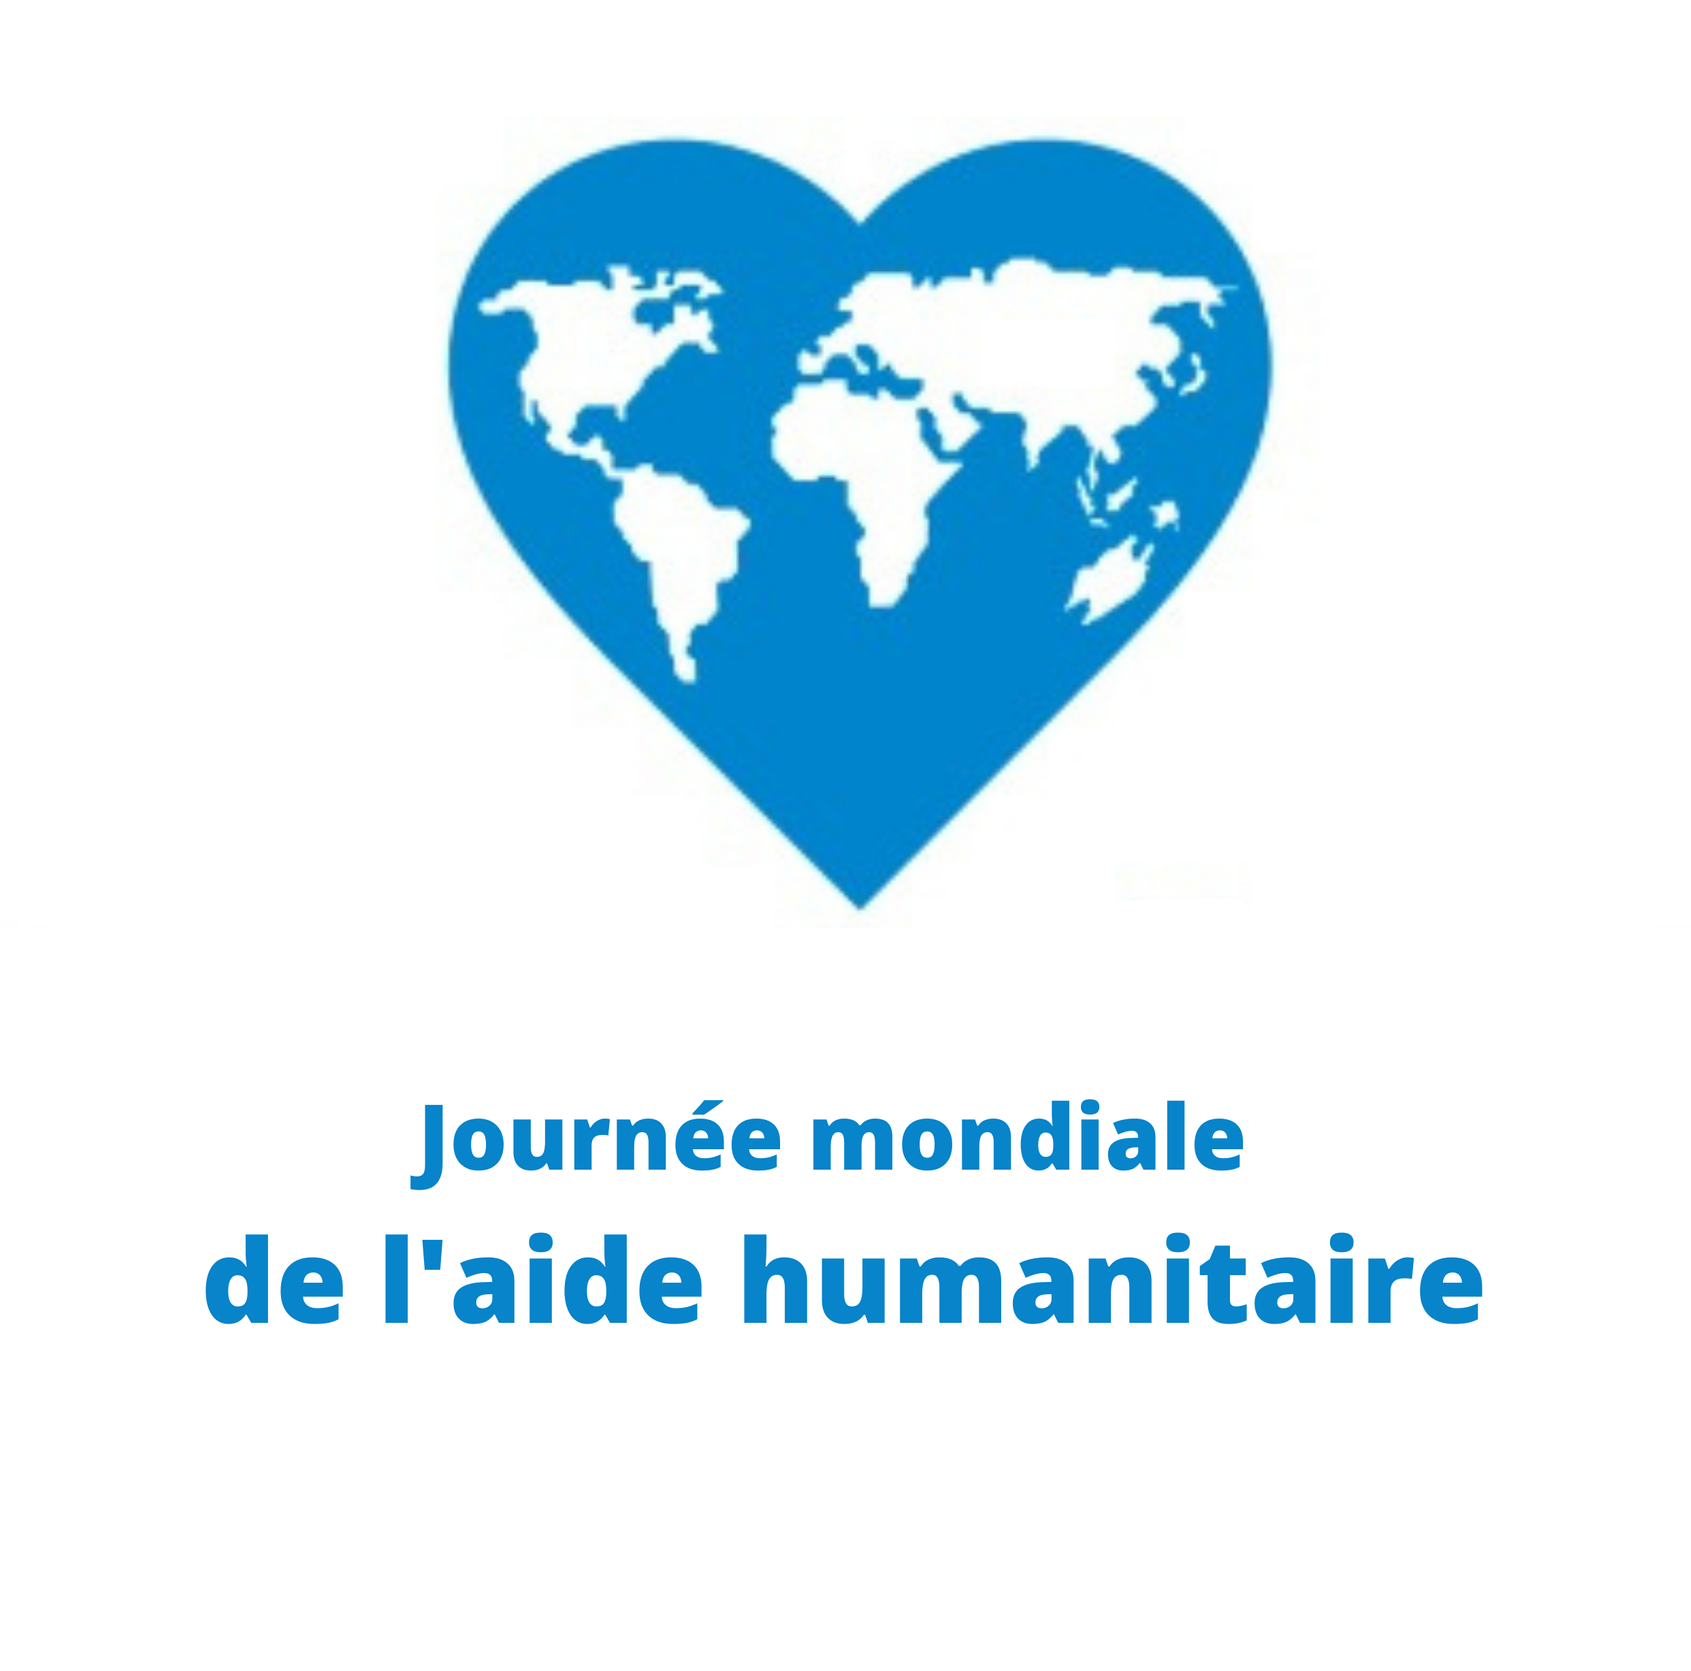 La Journée mondiale de l'aide humanitaire